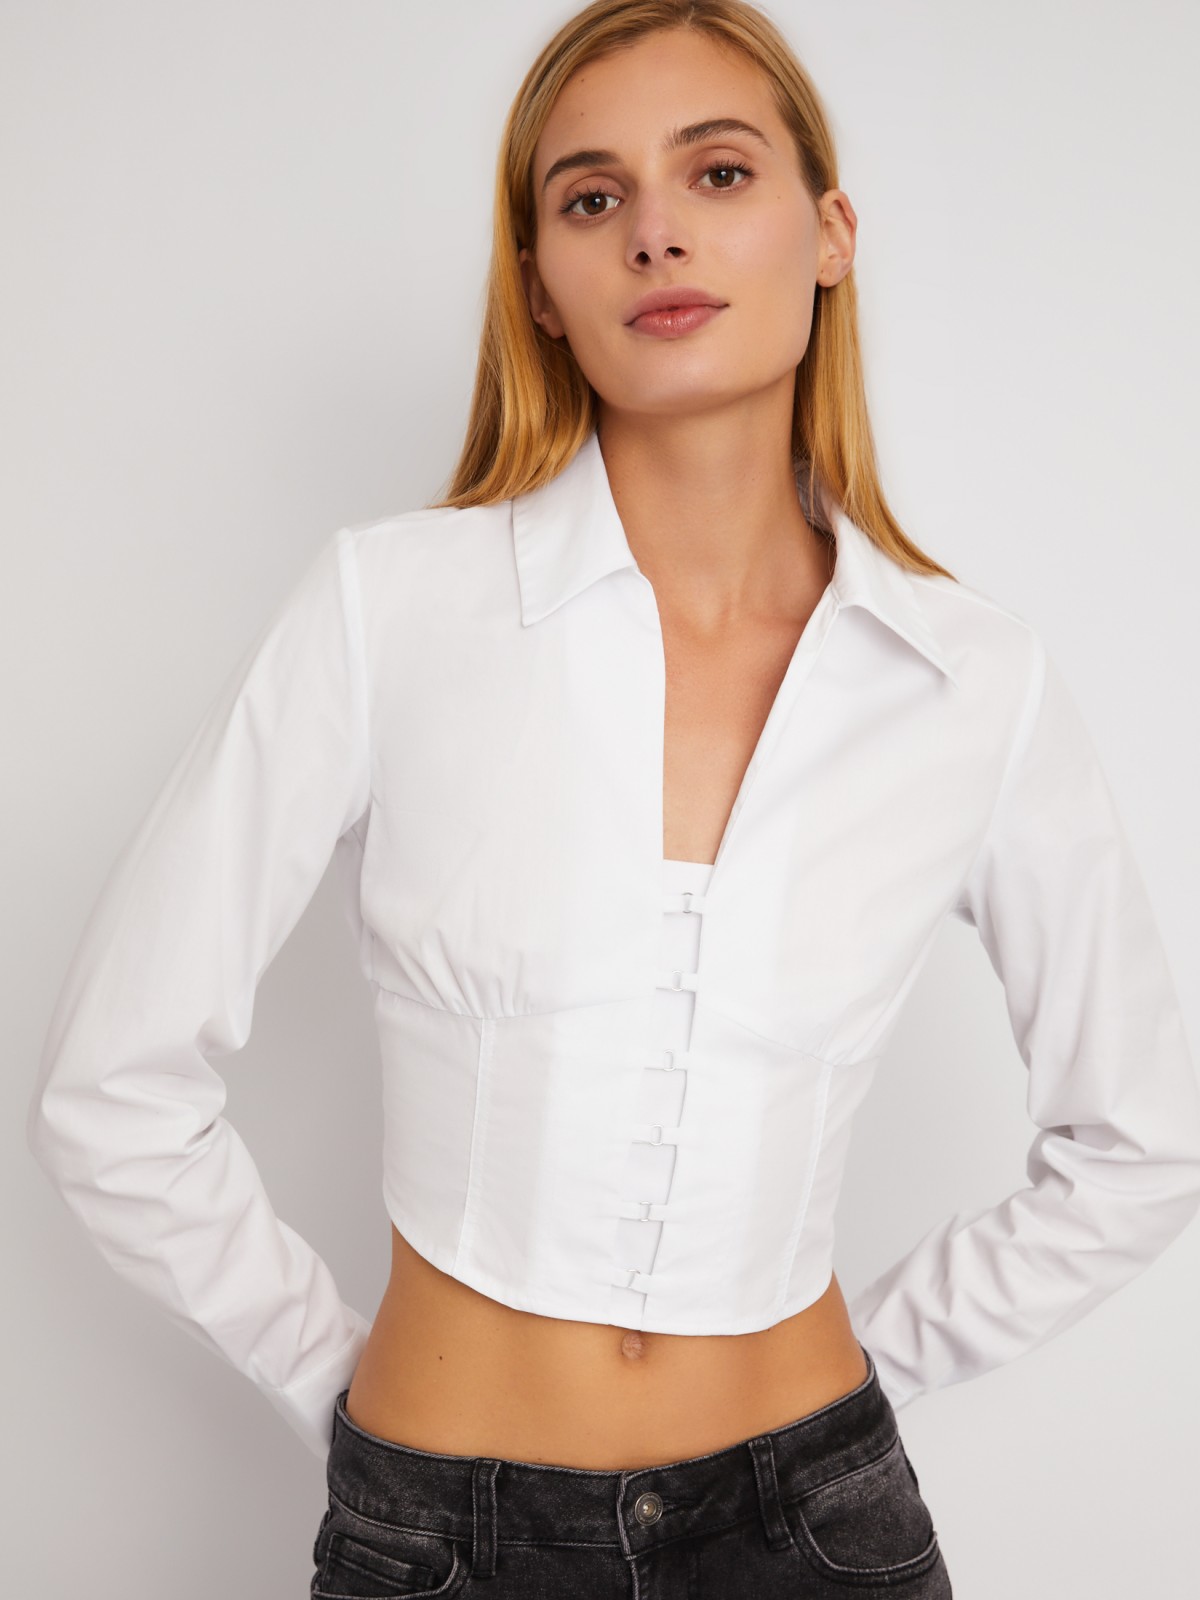 Укороченный топ-рубашка с имитацией корсета zolla 024111159271, цвет белый, размер XS - фото 5